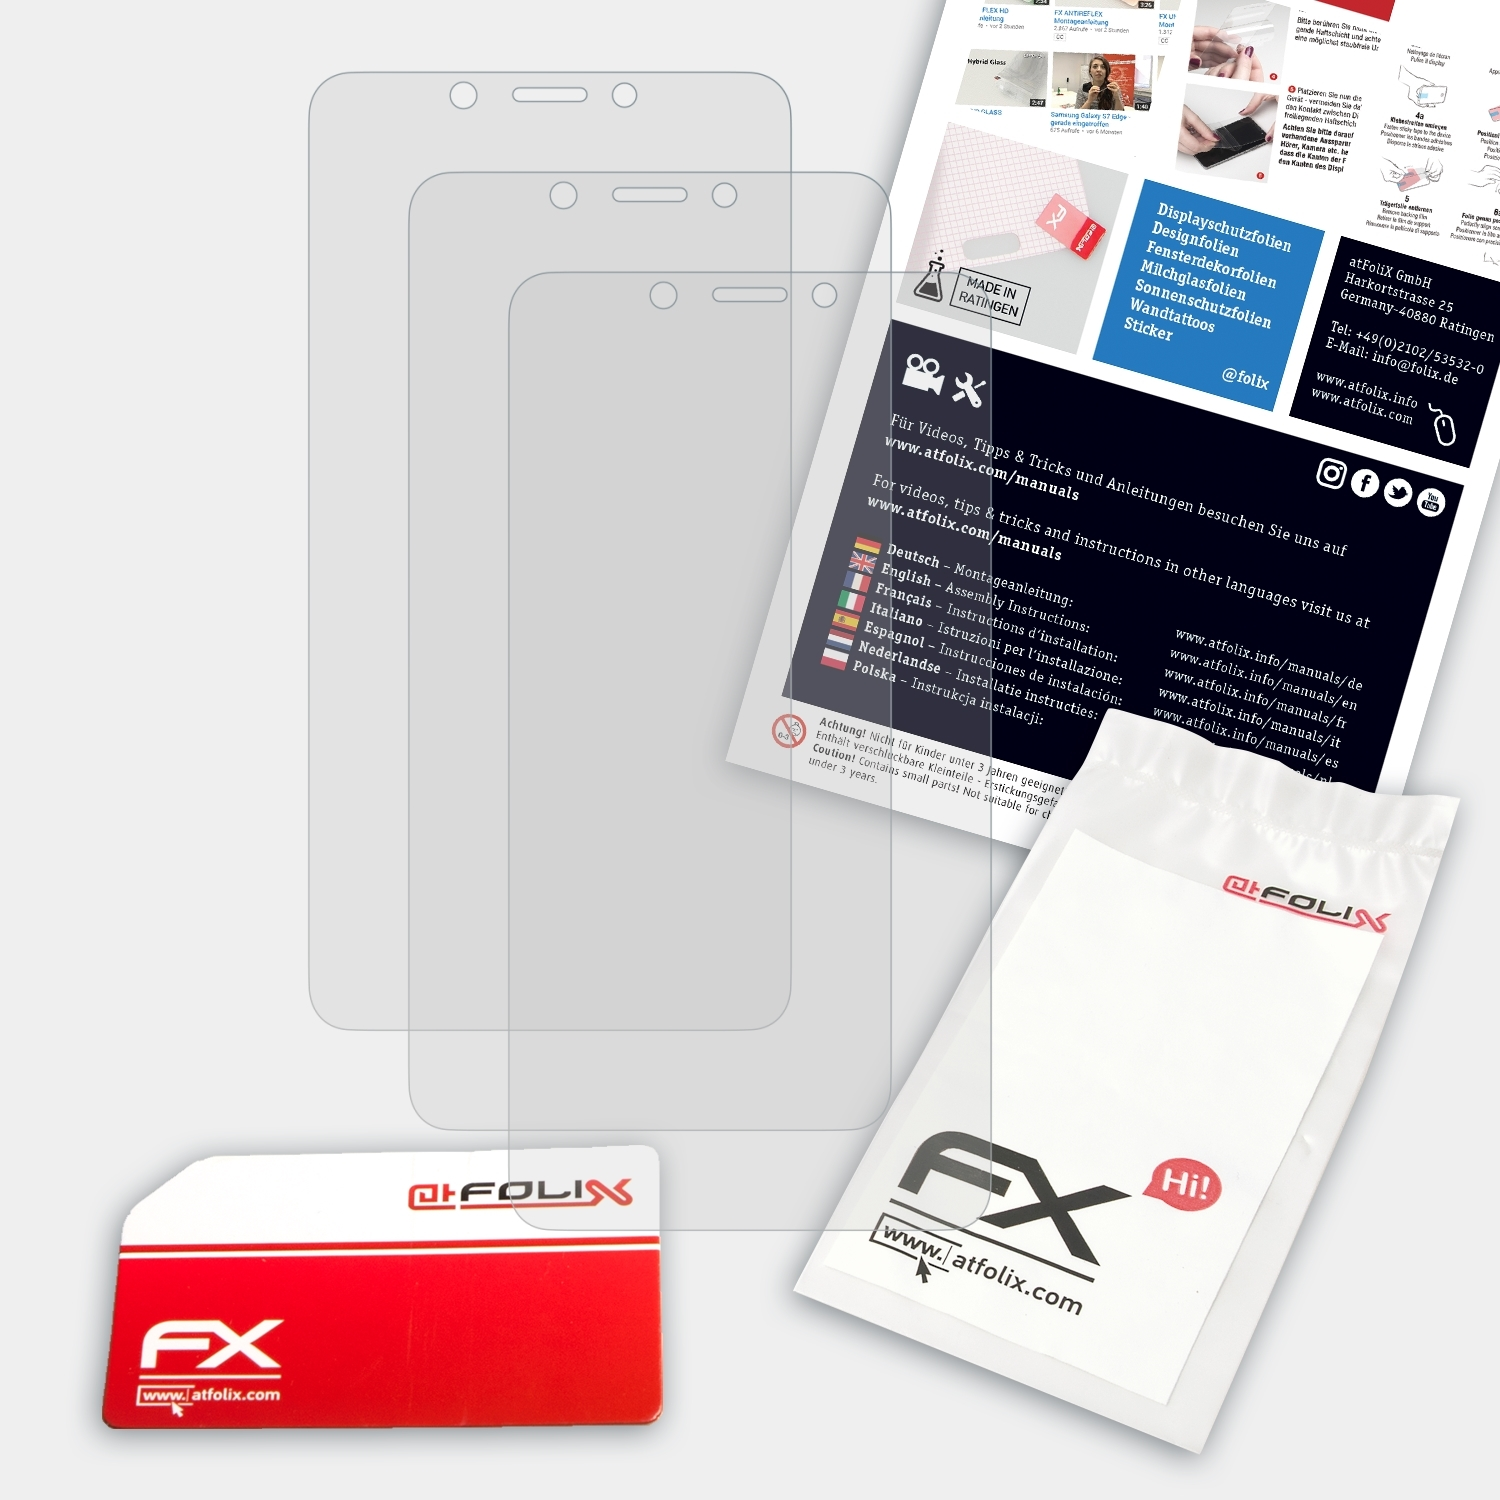 FX-Antireflex 3x ATFOLIX Alcatel XL) Displayschutz(für A7